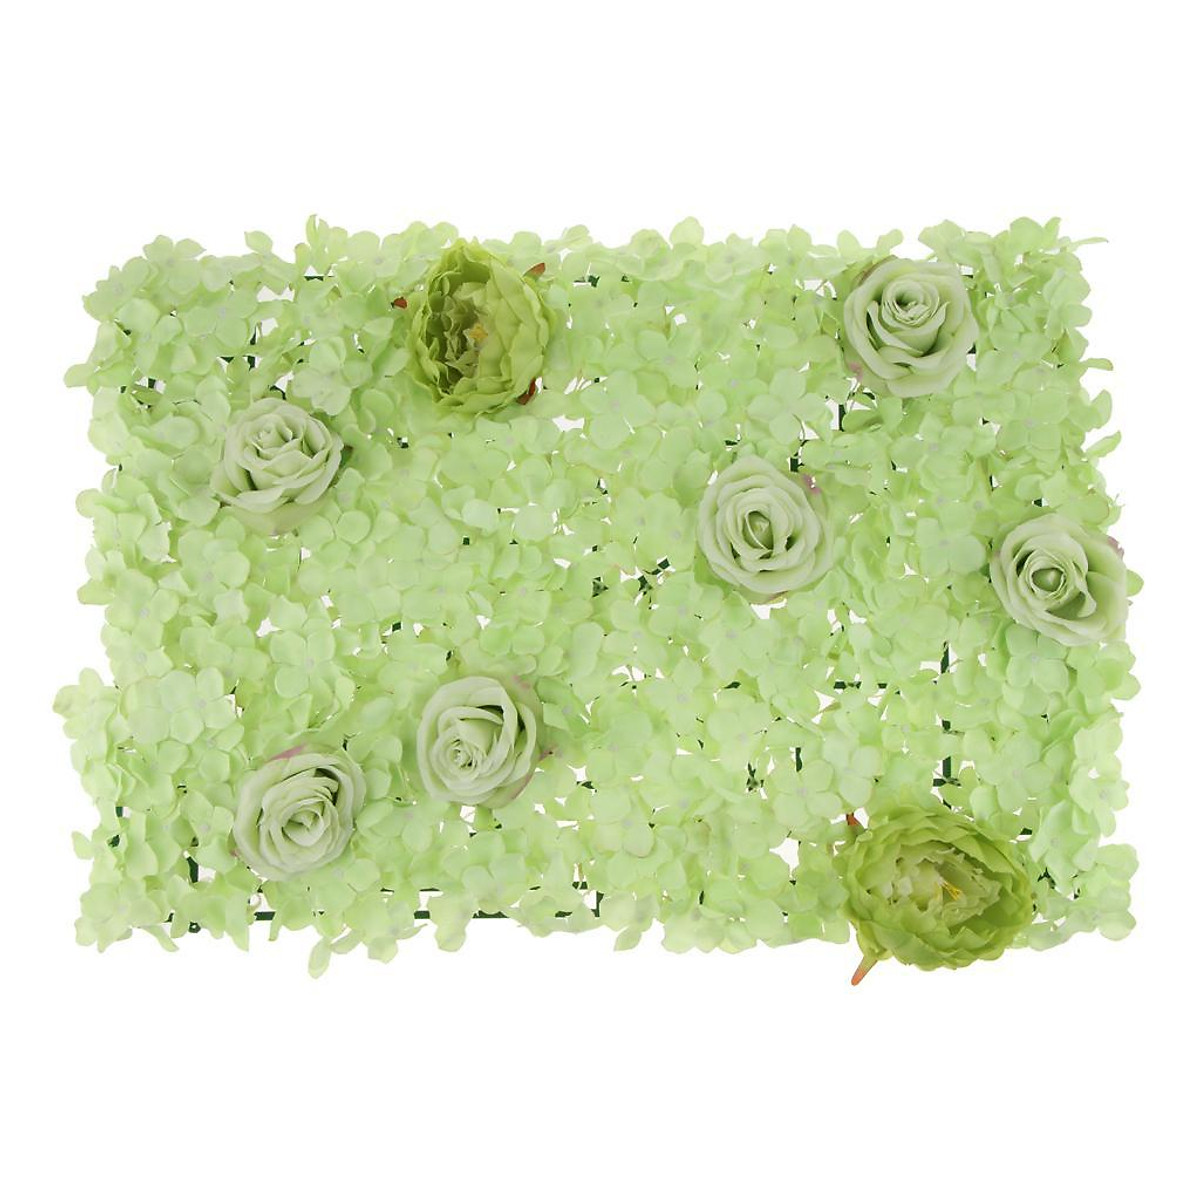 Mua Artificial Hydrangea Rose Peony Silk Flower Wall Panels - Hydrangea: Muốn trang trí căn nhà hay văn phòng của mình thêm xinh đẹp? Bộ tranh hoa Hồng, Phong lan và Hortensia giả này sẽ làm bạn hài lòng. Với chất liệu lụa nhân tạo, tạo hình và sắc màu tự nhiên, tưởng như bạn đang thưởng thức những bức tranh tuyệt đẹp của thiên nhiên.